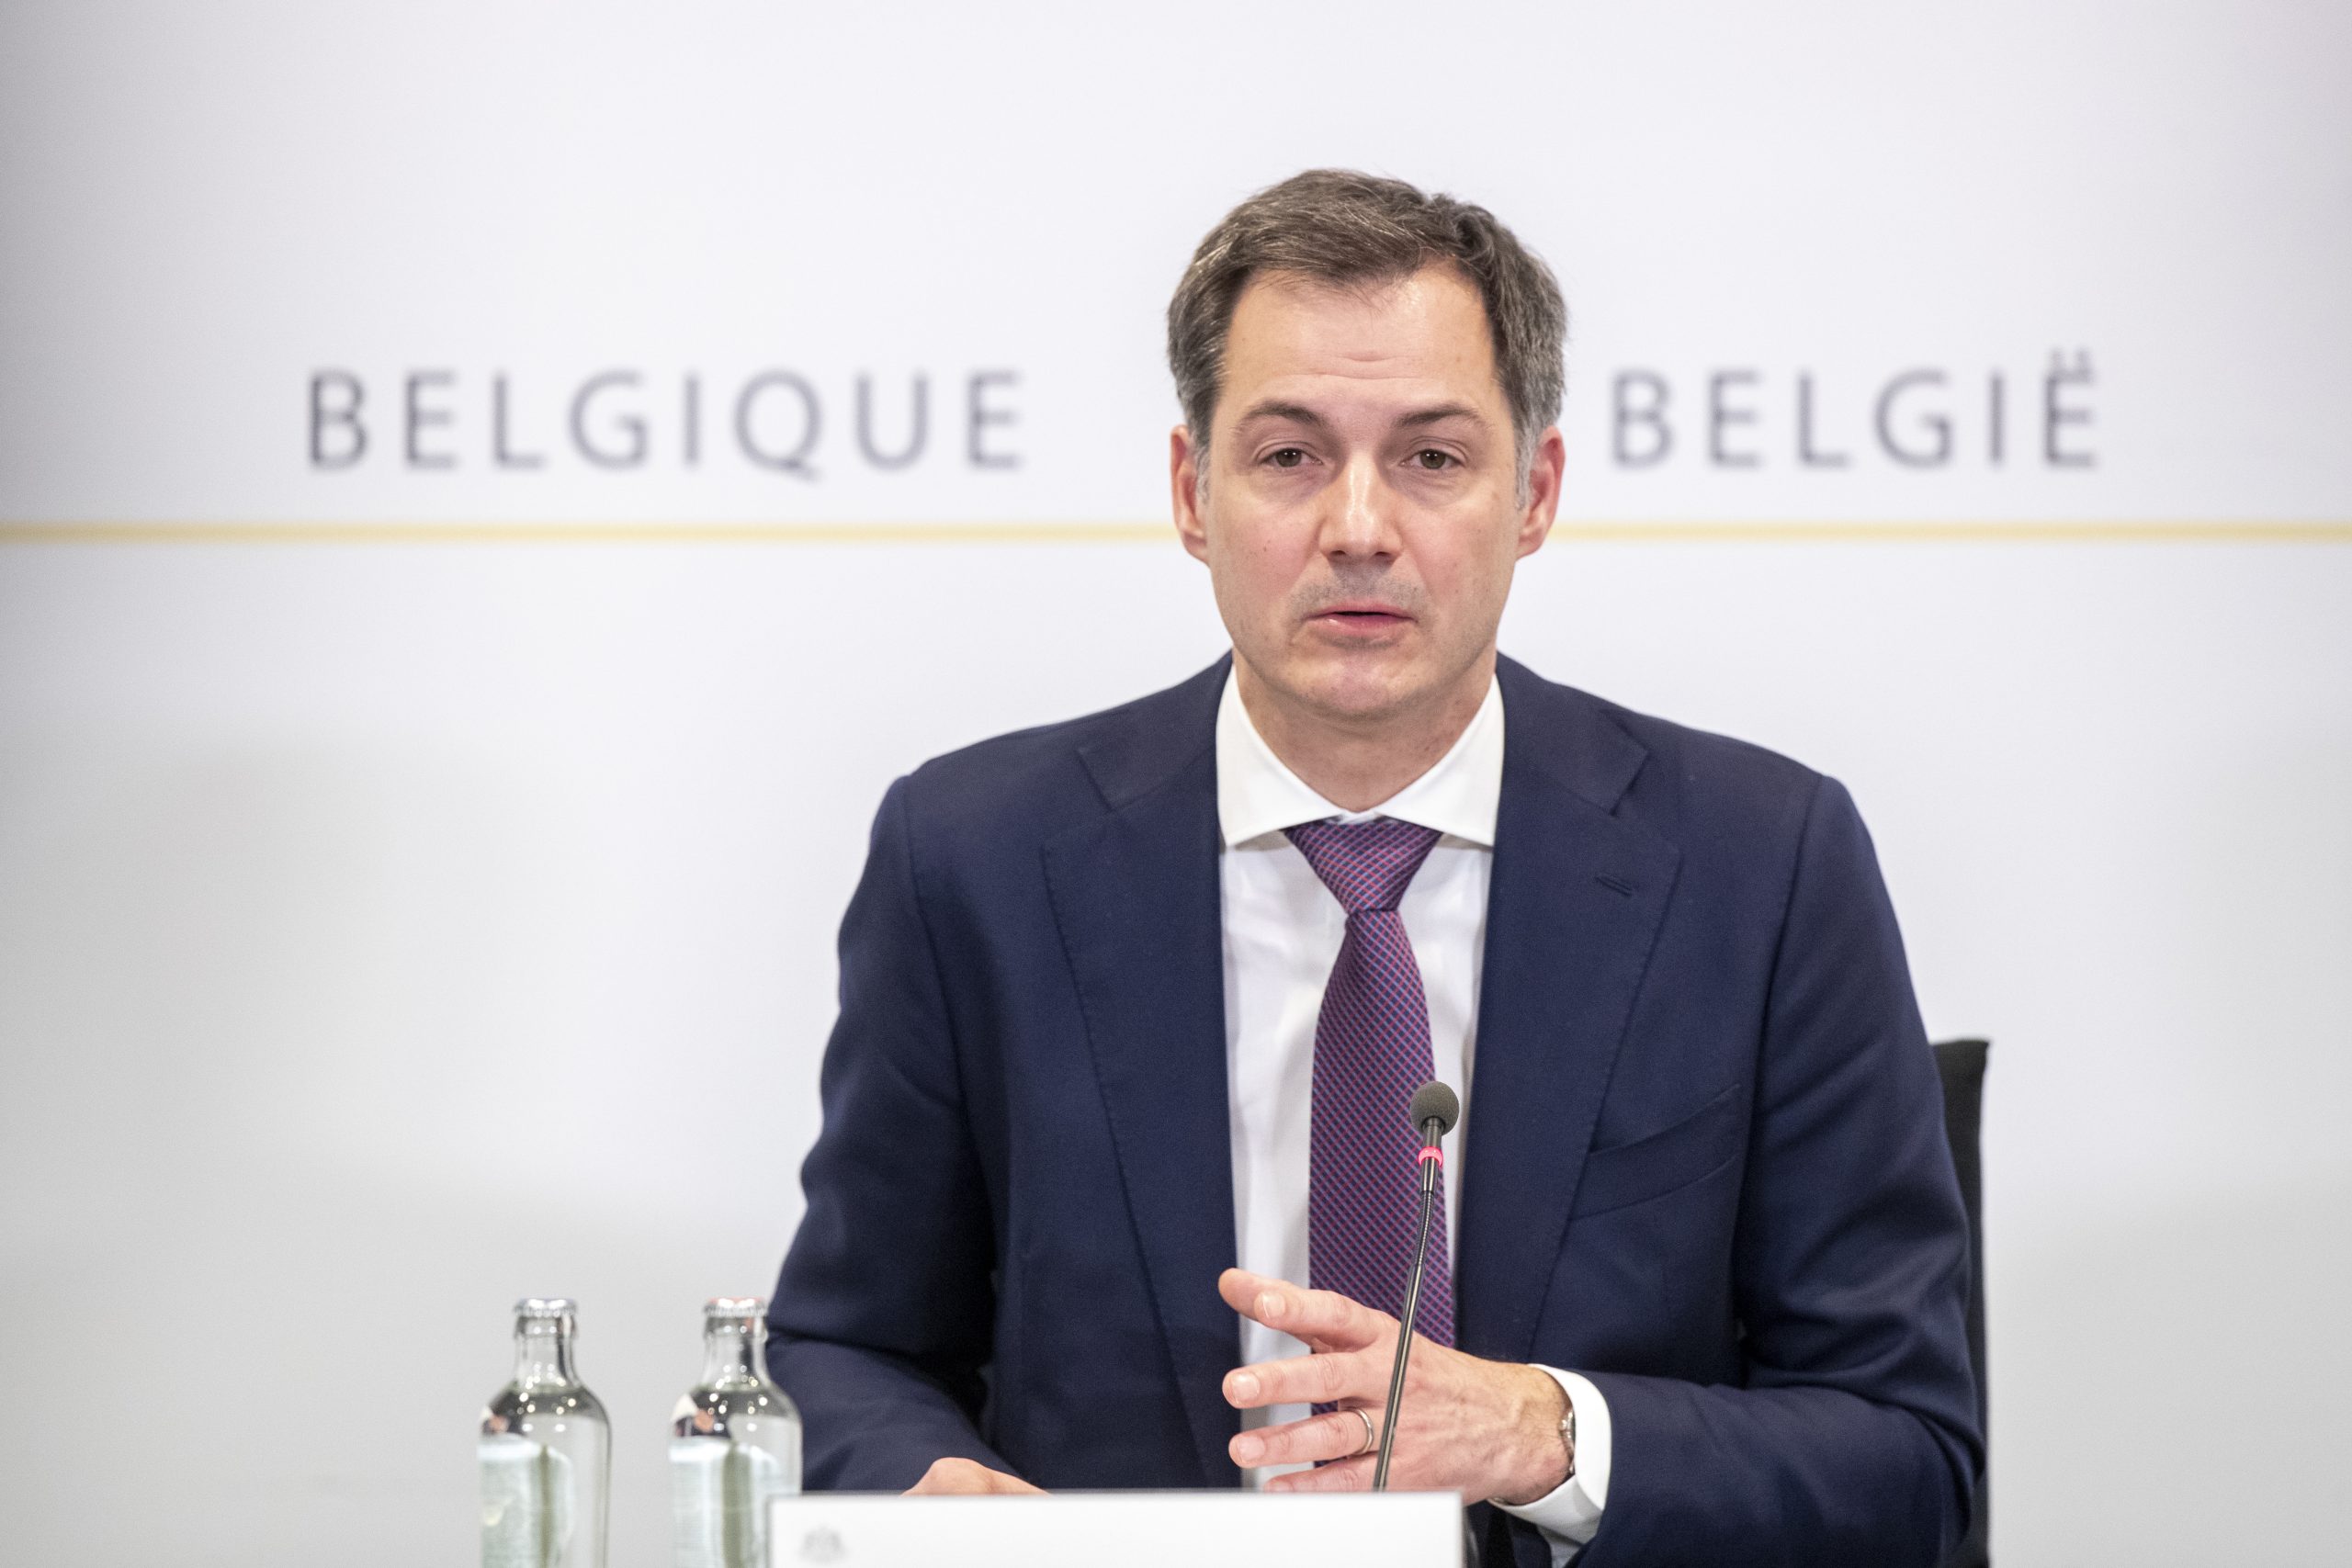 Bélgica permitirá concentrar la semana laboral en cuatro días trabajando las mismas horas